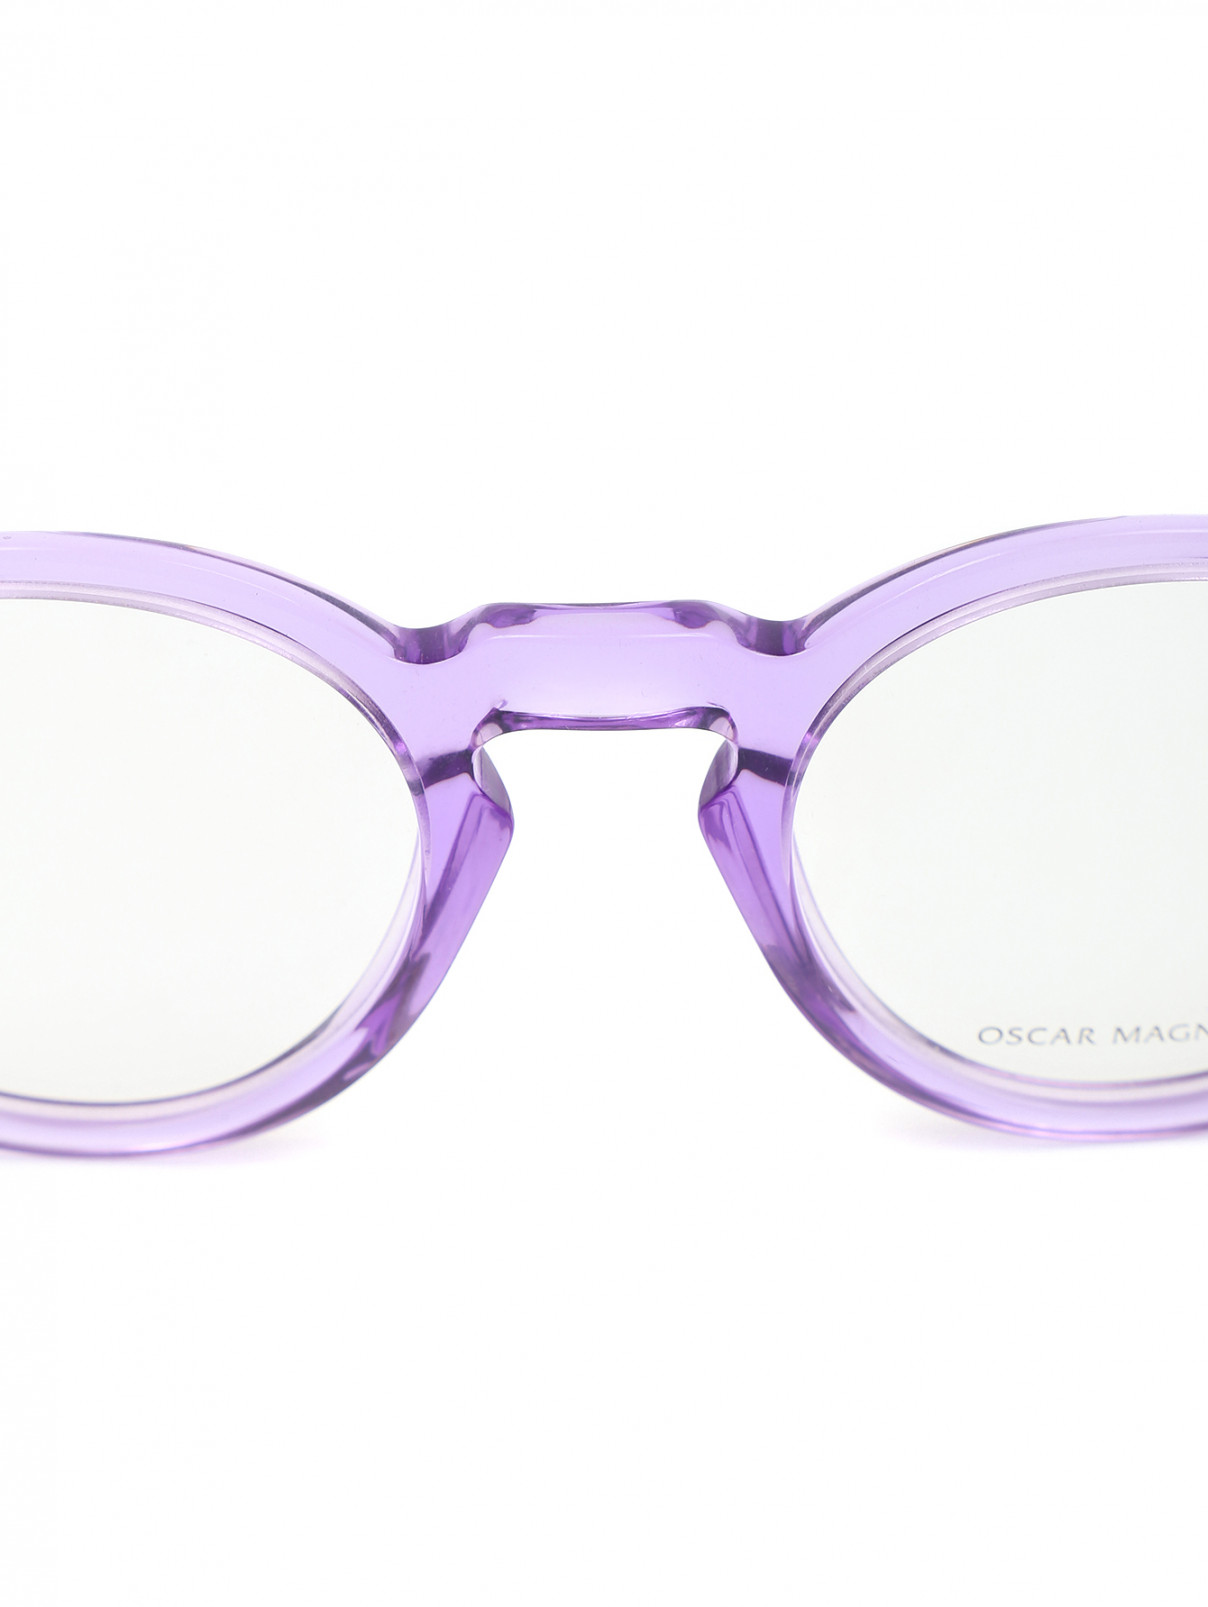 Круглая оправа с прозрачными стеклами Oscar Magnuson  –  Деталь1  – Цвет:  Фиолетовый